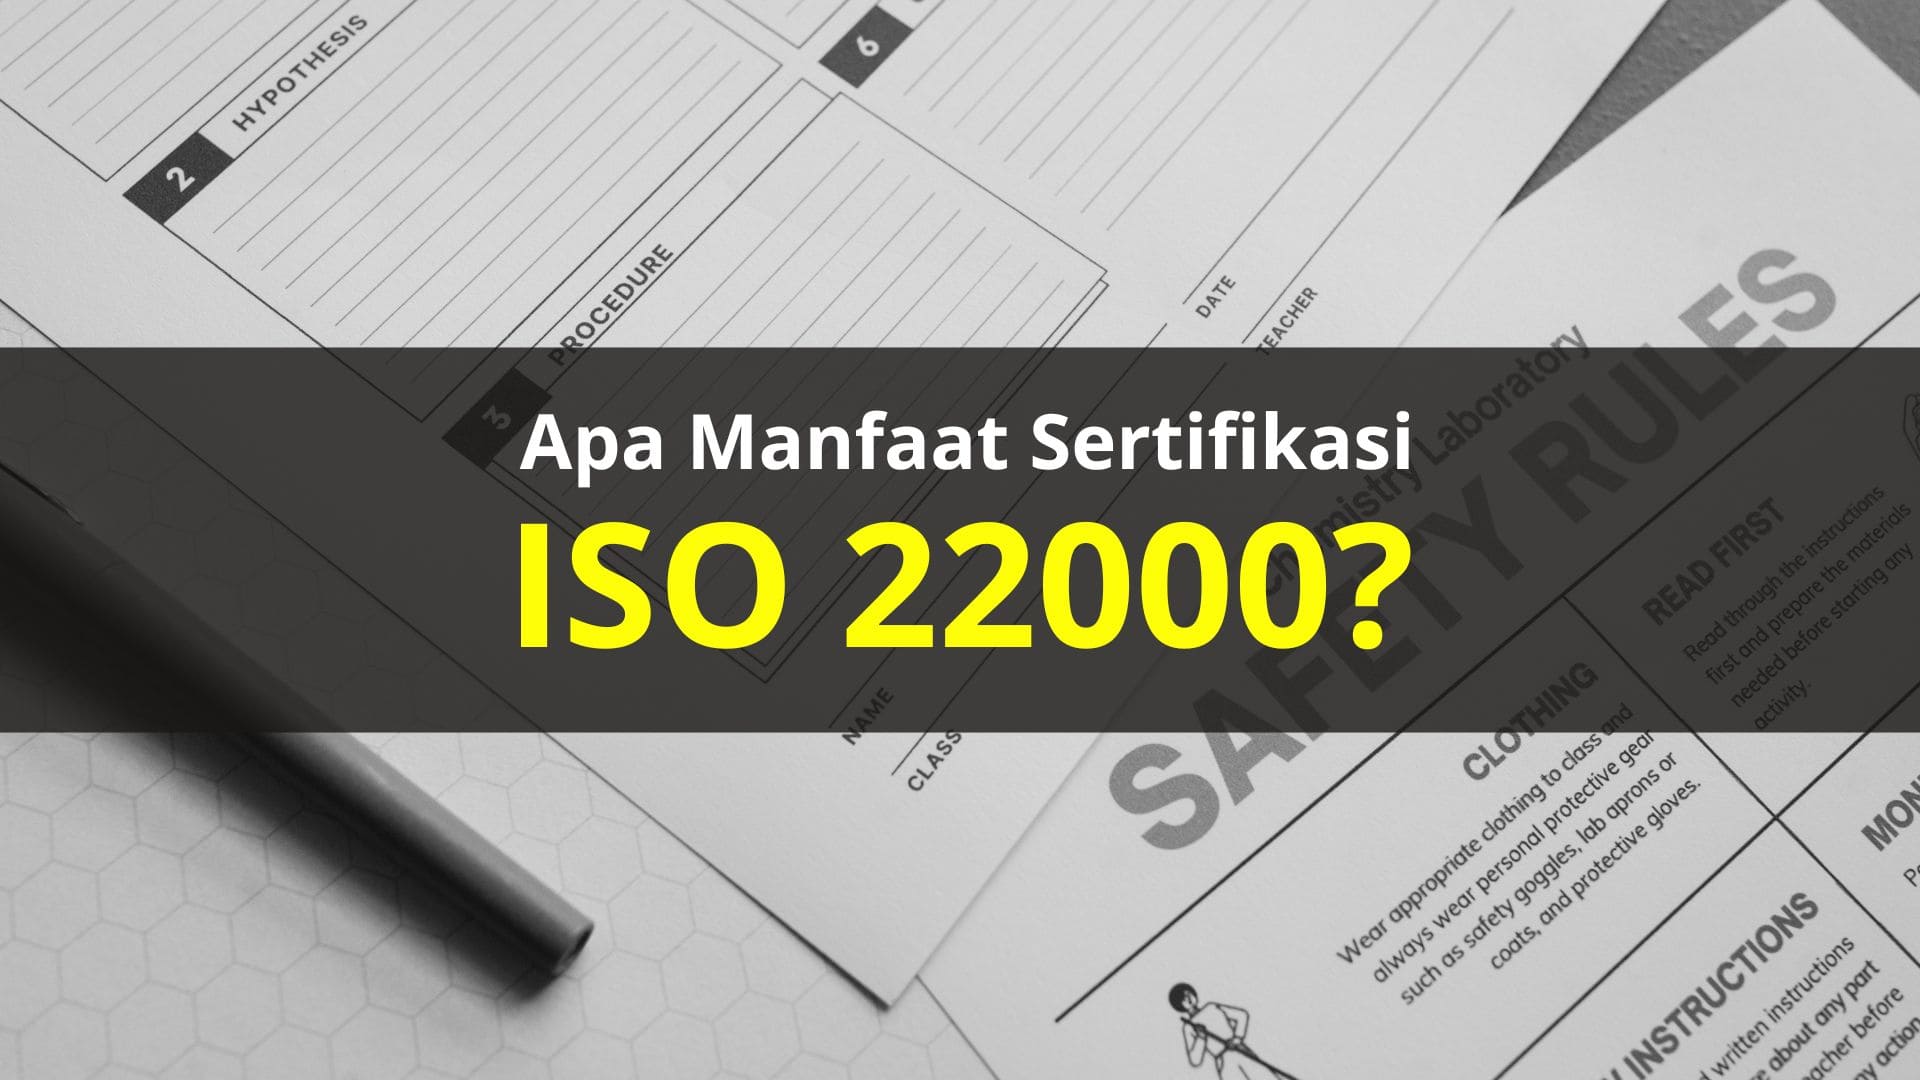 Apa Manfaat Sertifikasi ISO 22000?